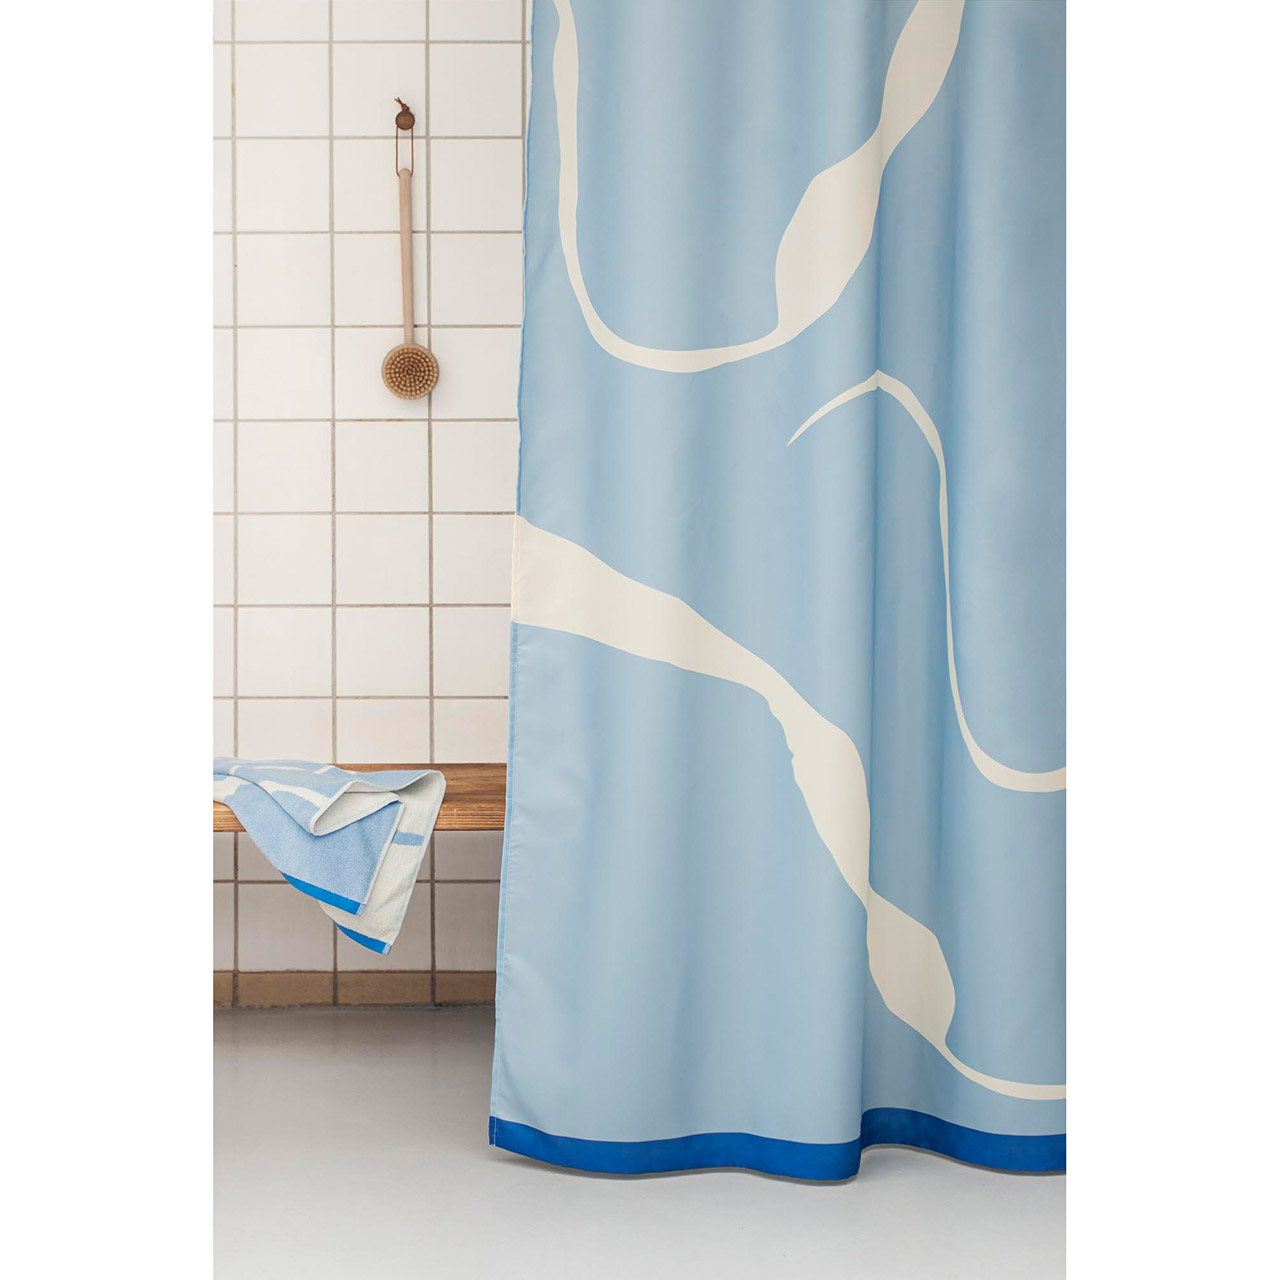 einfach Duschvorhänge 150x200 Textil gute Arte Duschvorhang.de, Nova | Duschvorhang blau